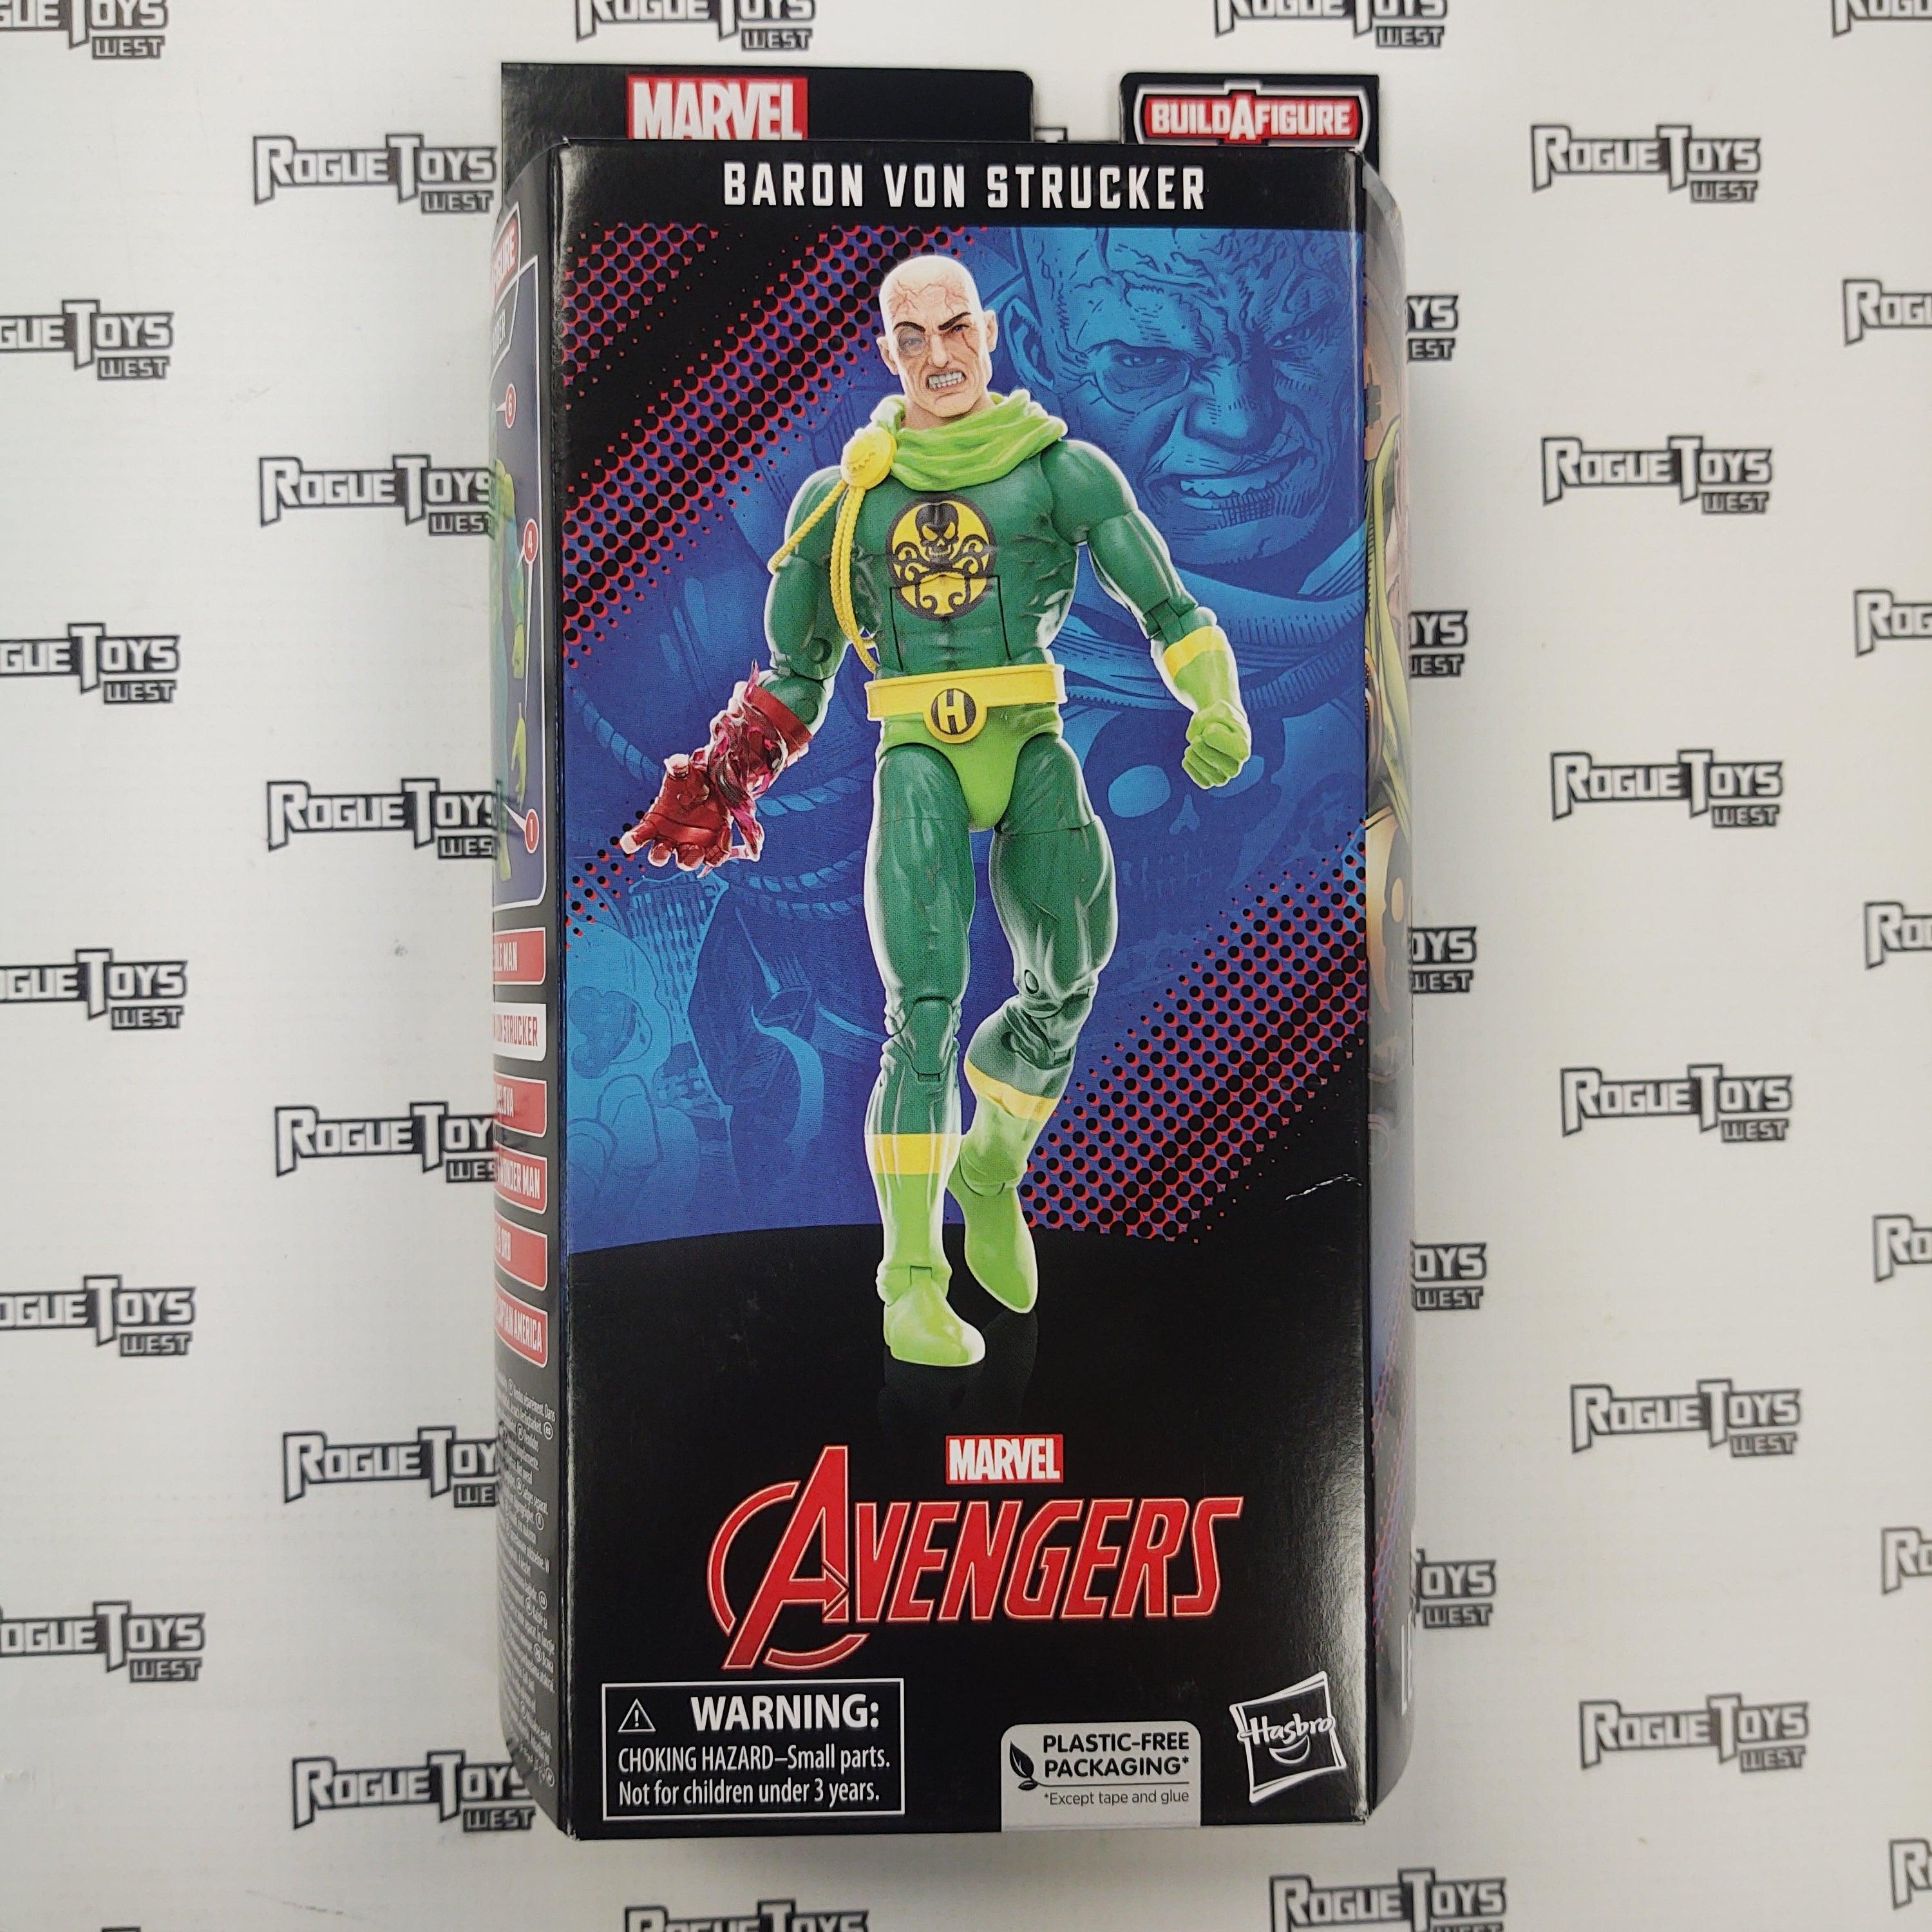 Hasbro Marvel Legends Avengers Baron Von Strucker (Puff Adder Wave) - Rogue Toys